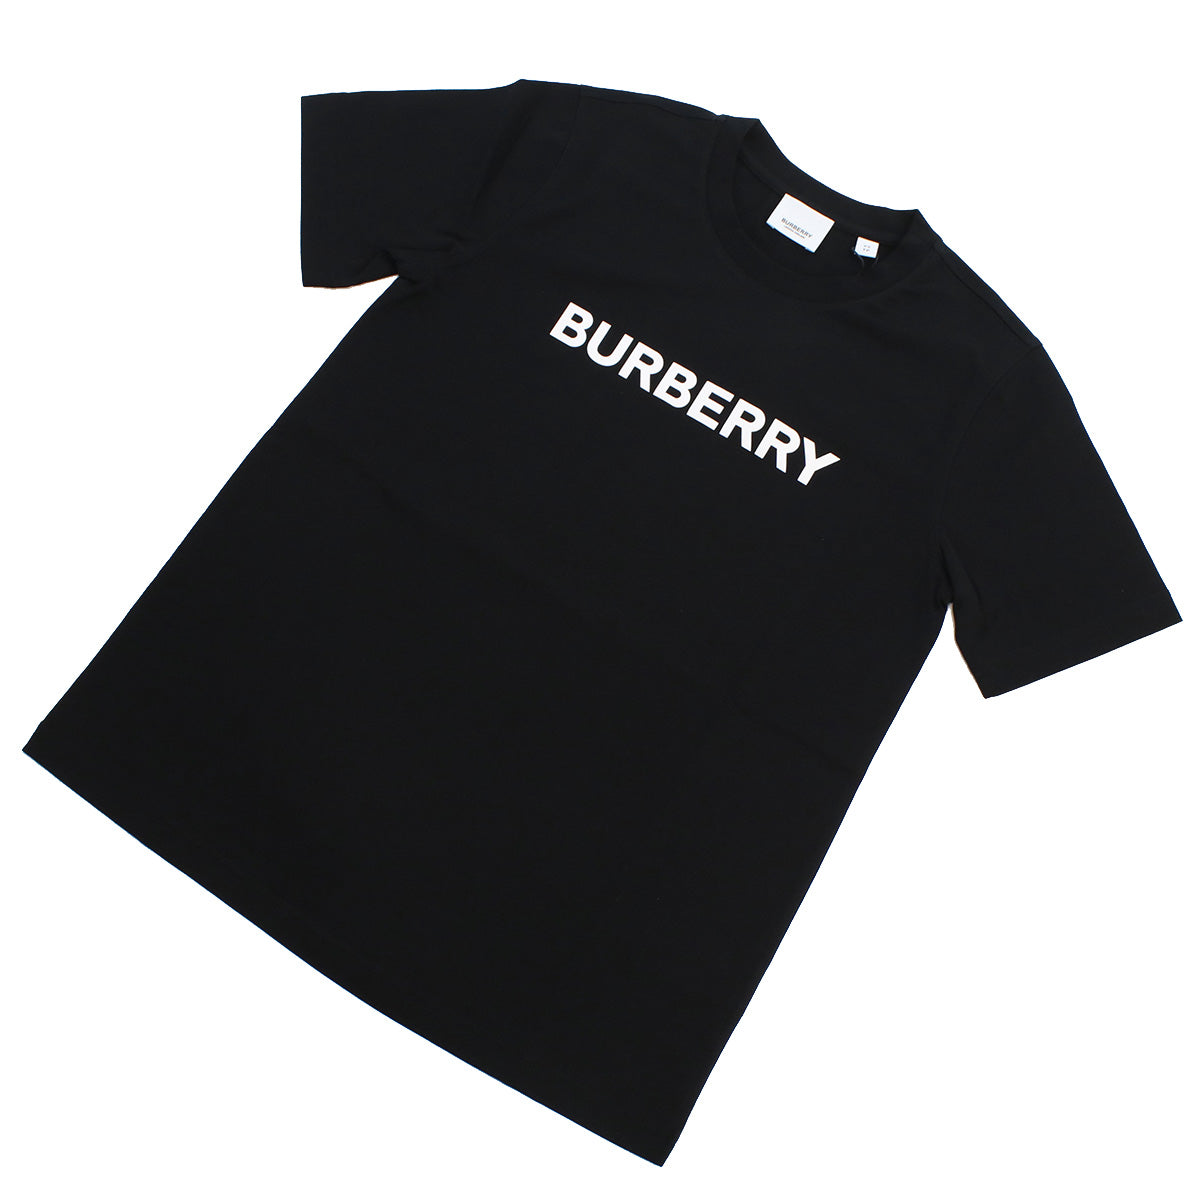 BURBERRY バーバリー 8055251 Tシャツ BLACK ブラック レディース